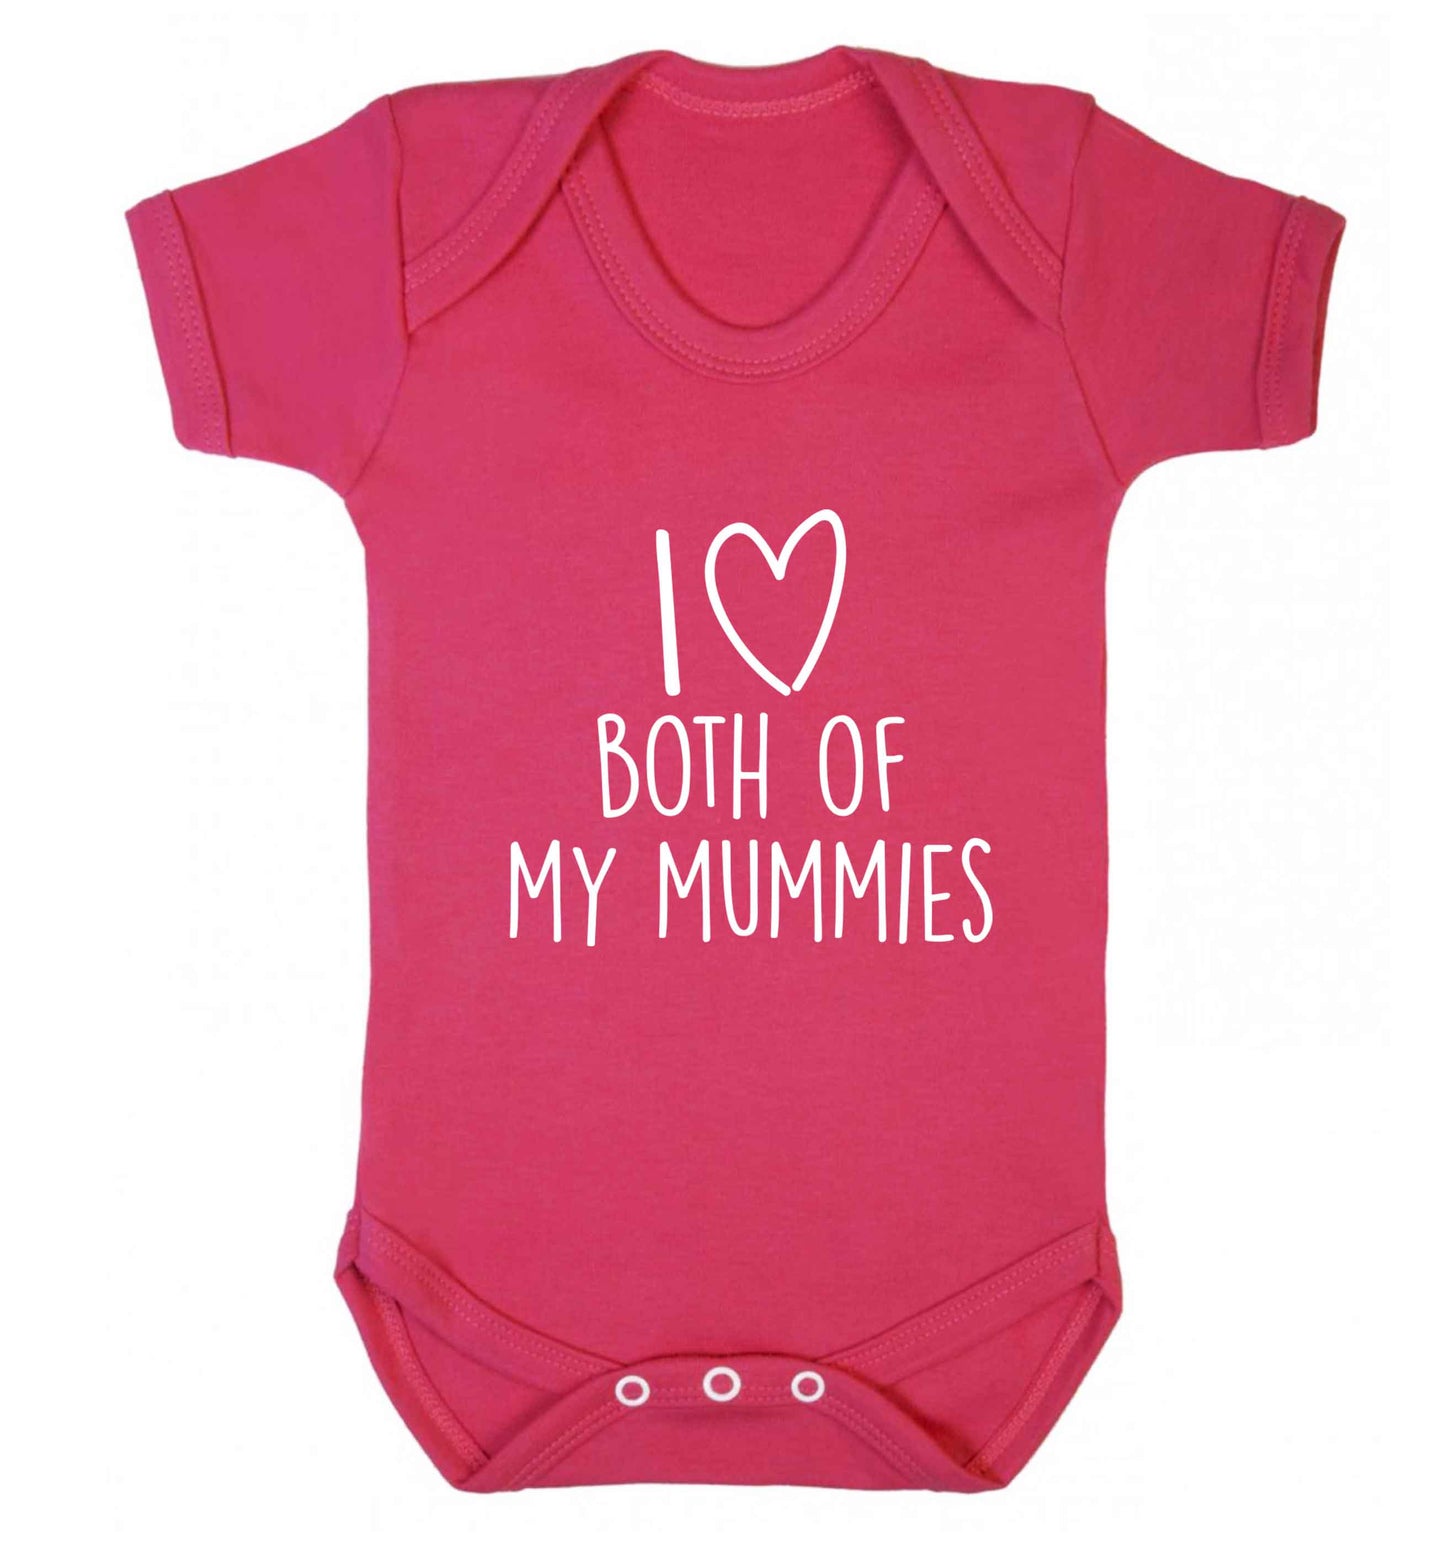 I love both of my mummies baby vest dark pink 18-24 months